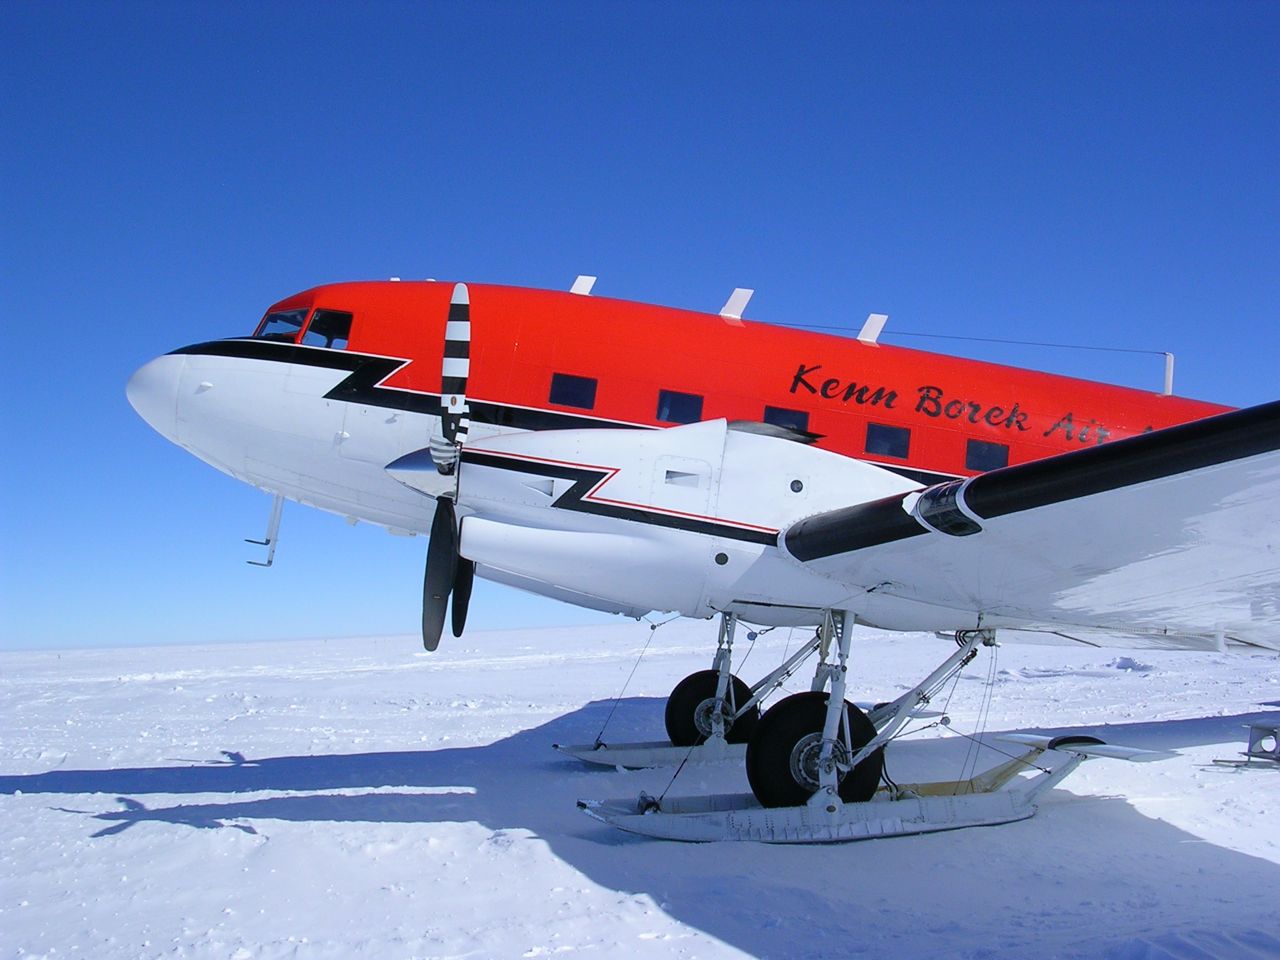 Az egyetlen farokkerekes típus, amely még menetrend szerint közforgalomban repül: a Kenn Borek Air turboprop DC-3-asa valahol Kanadában